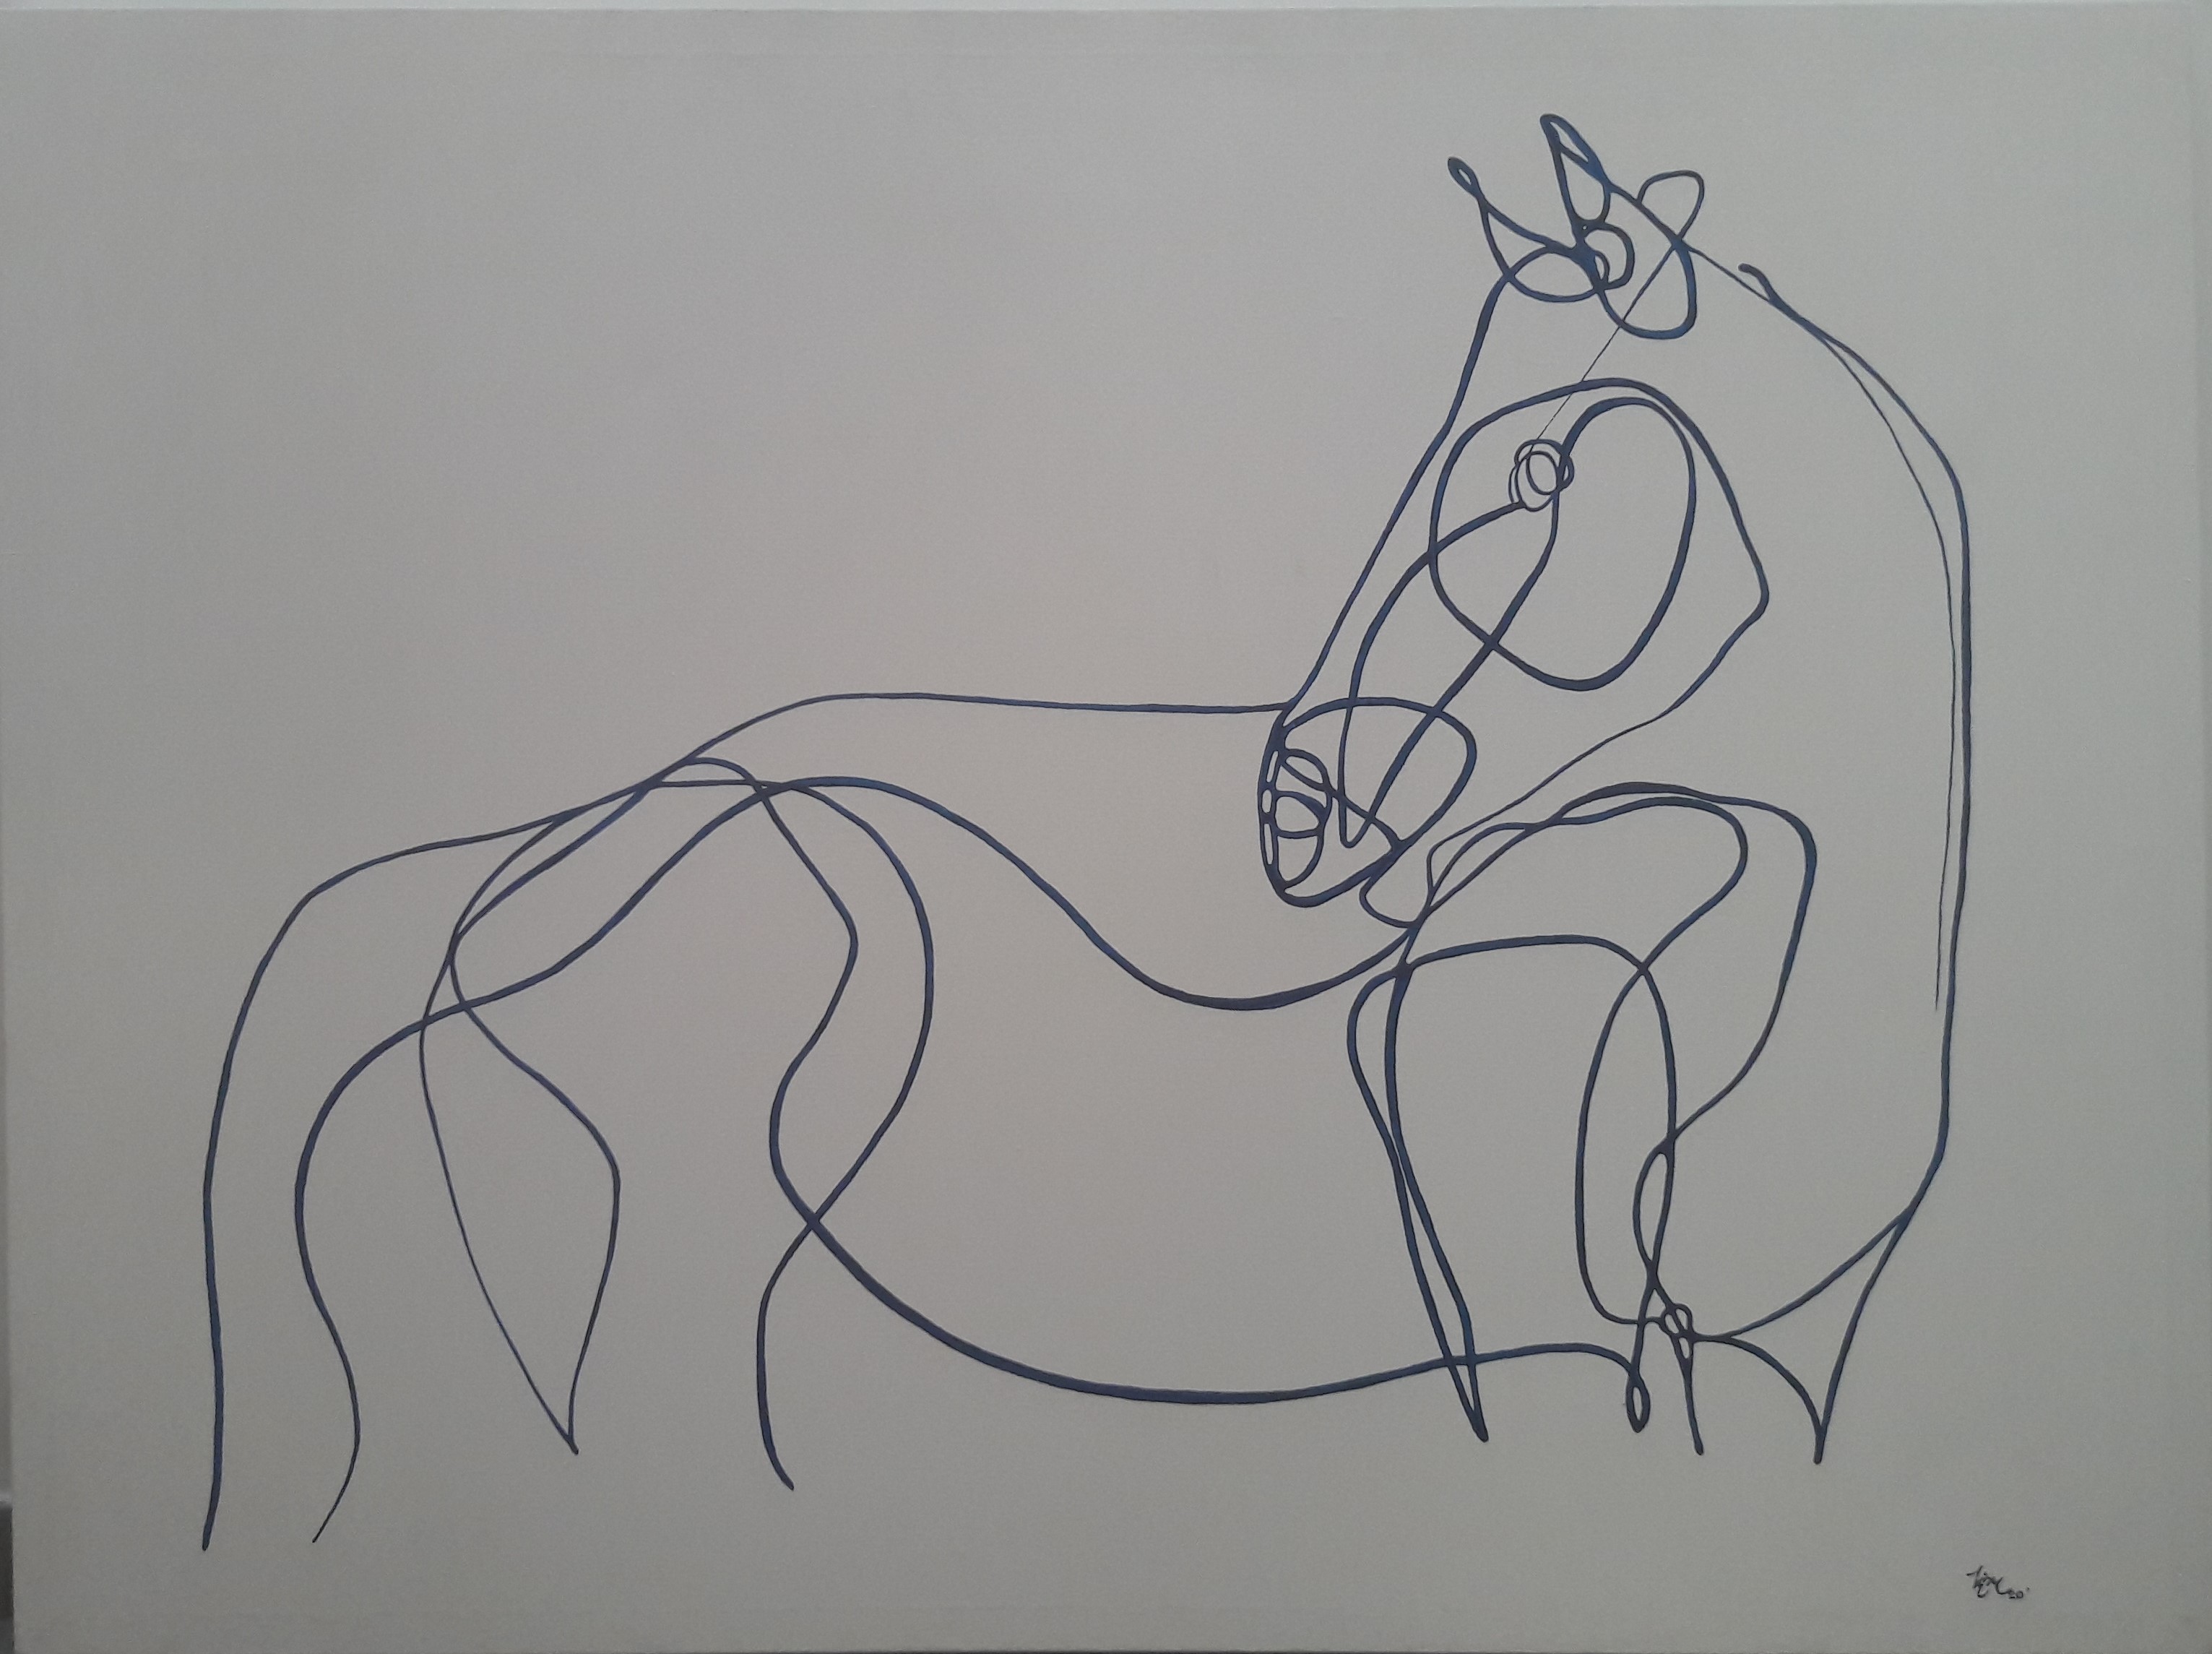 Horse IV by Hirudi Sankalpana